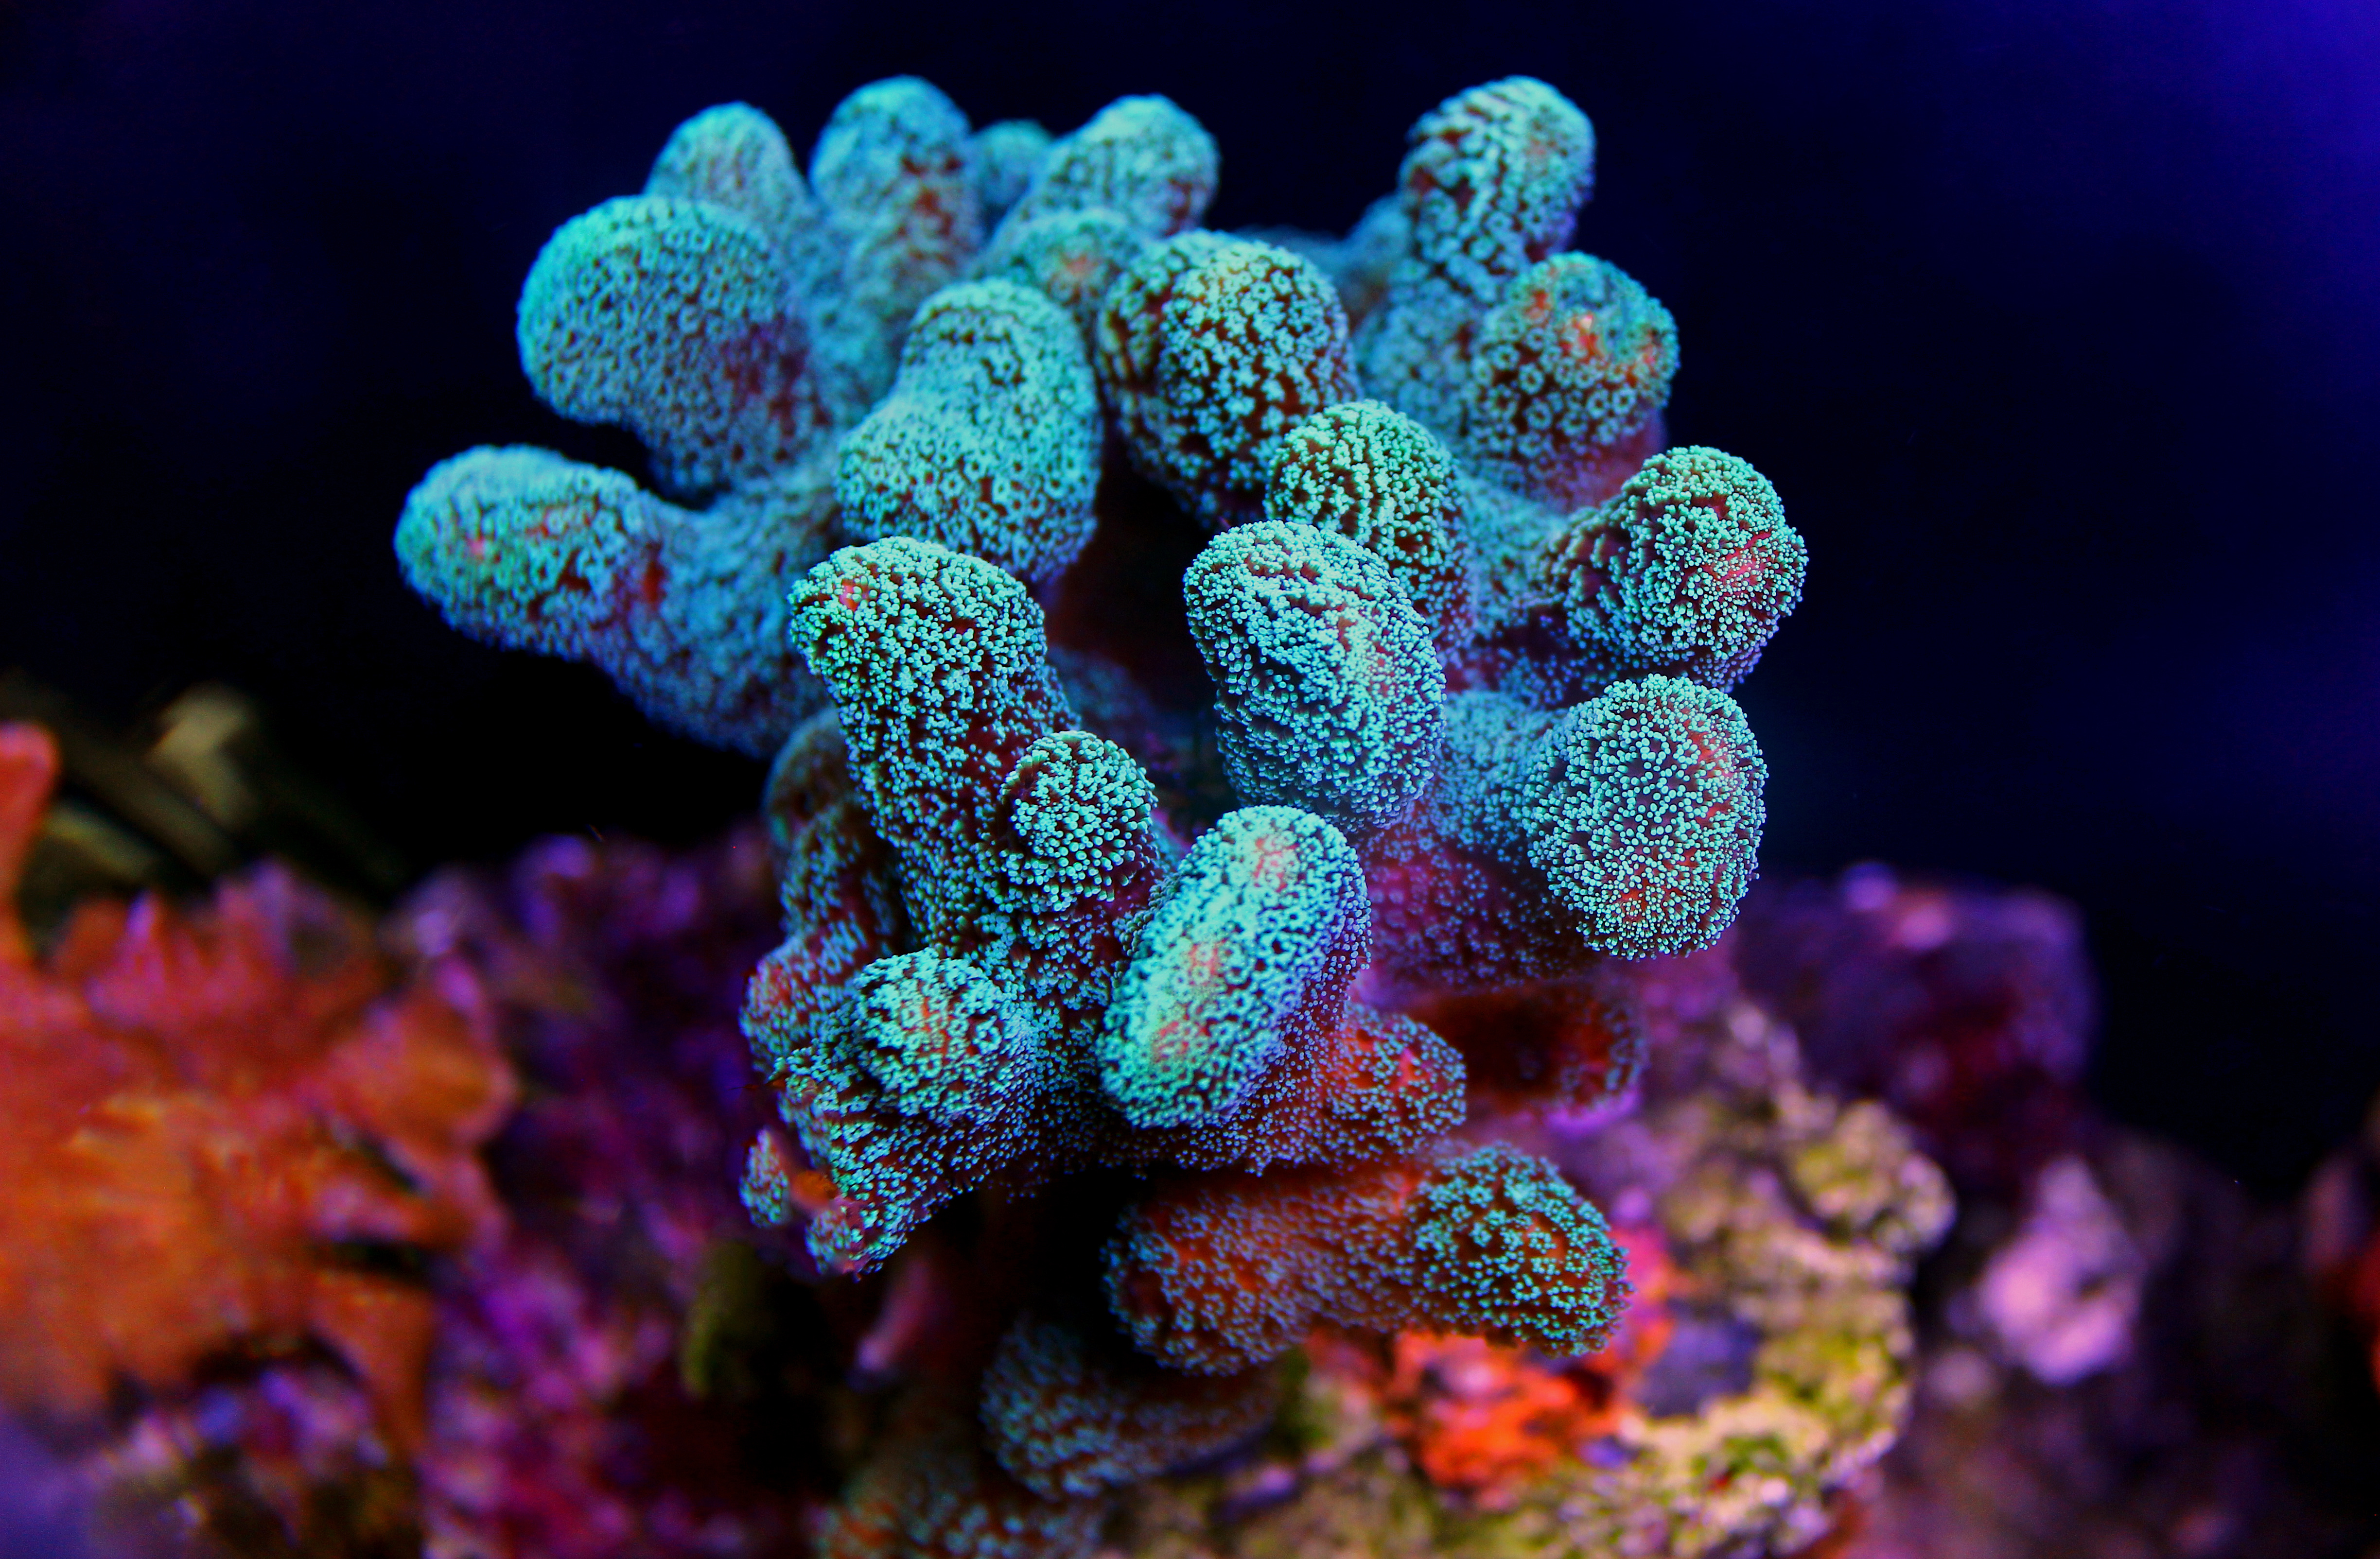 Les récifs coralliens abritent 25 % de la biodiversité marine. © Kolevski.V, Adobe Stock